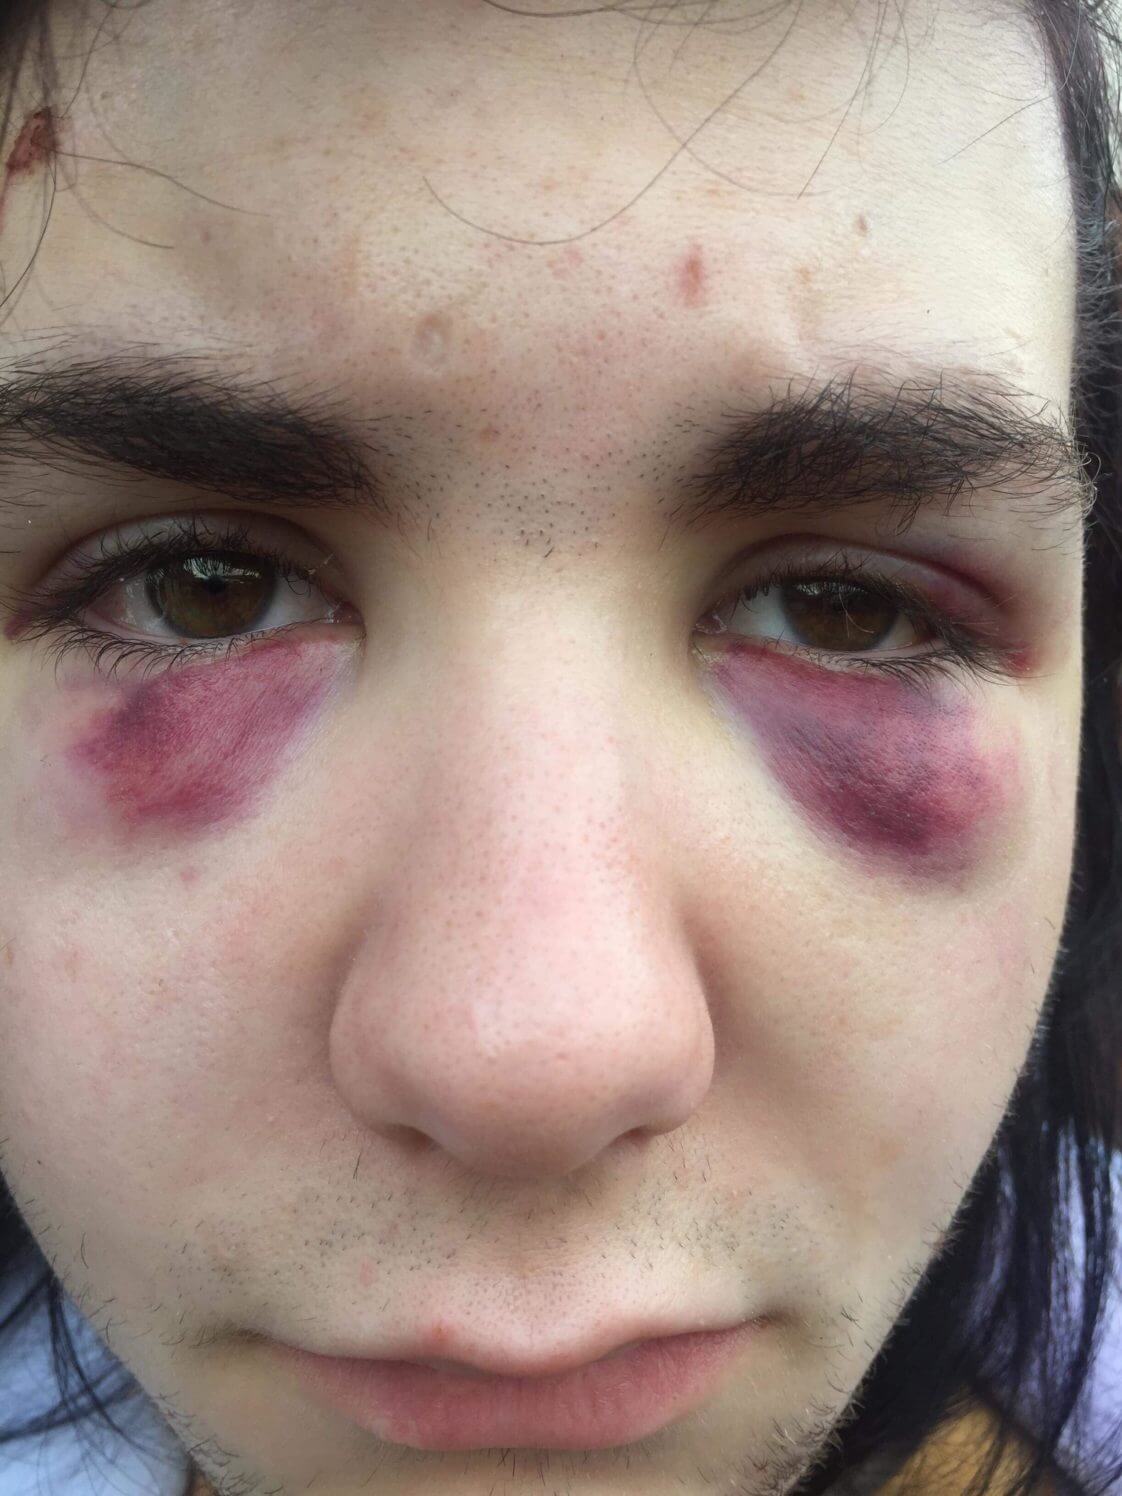 Adolescente picchiato su un bus perché gay: "Non smetterò di essere chi sono" - Kydis Zellinger - Gay.it